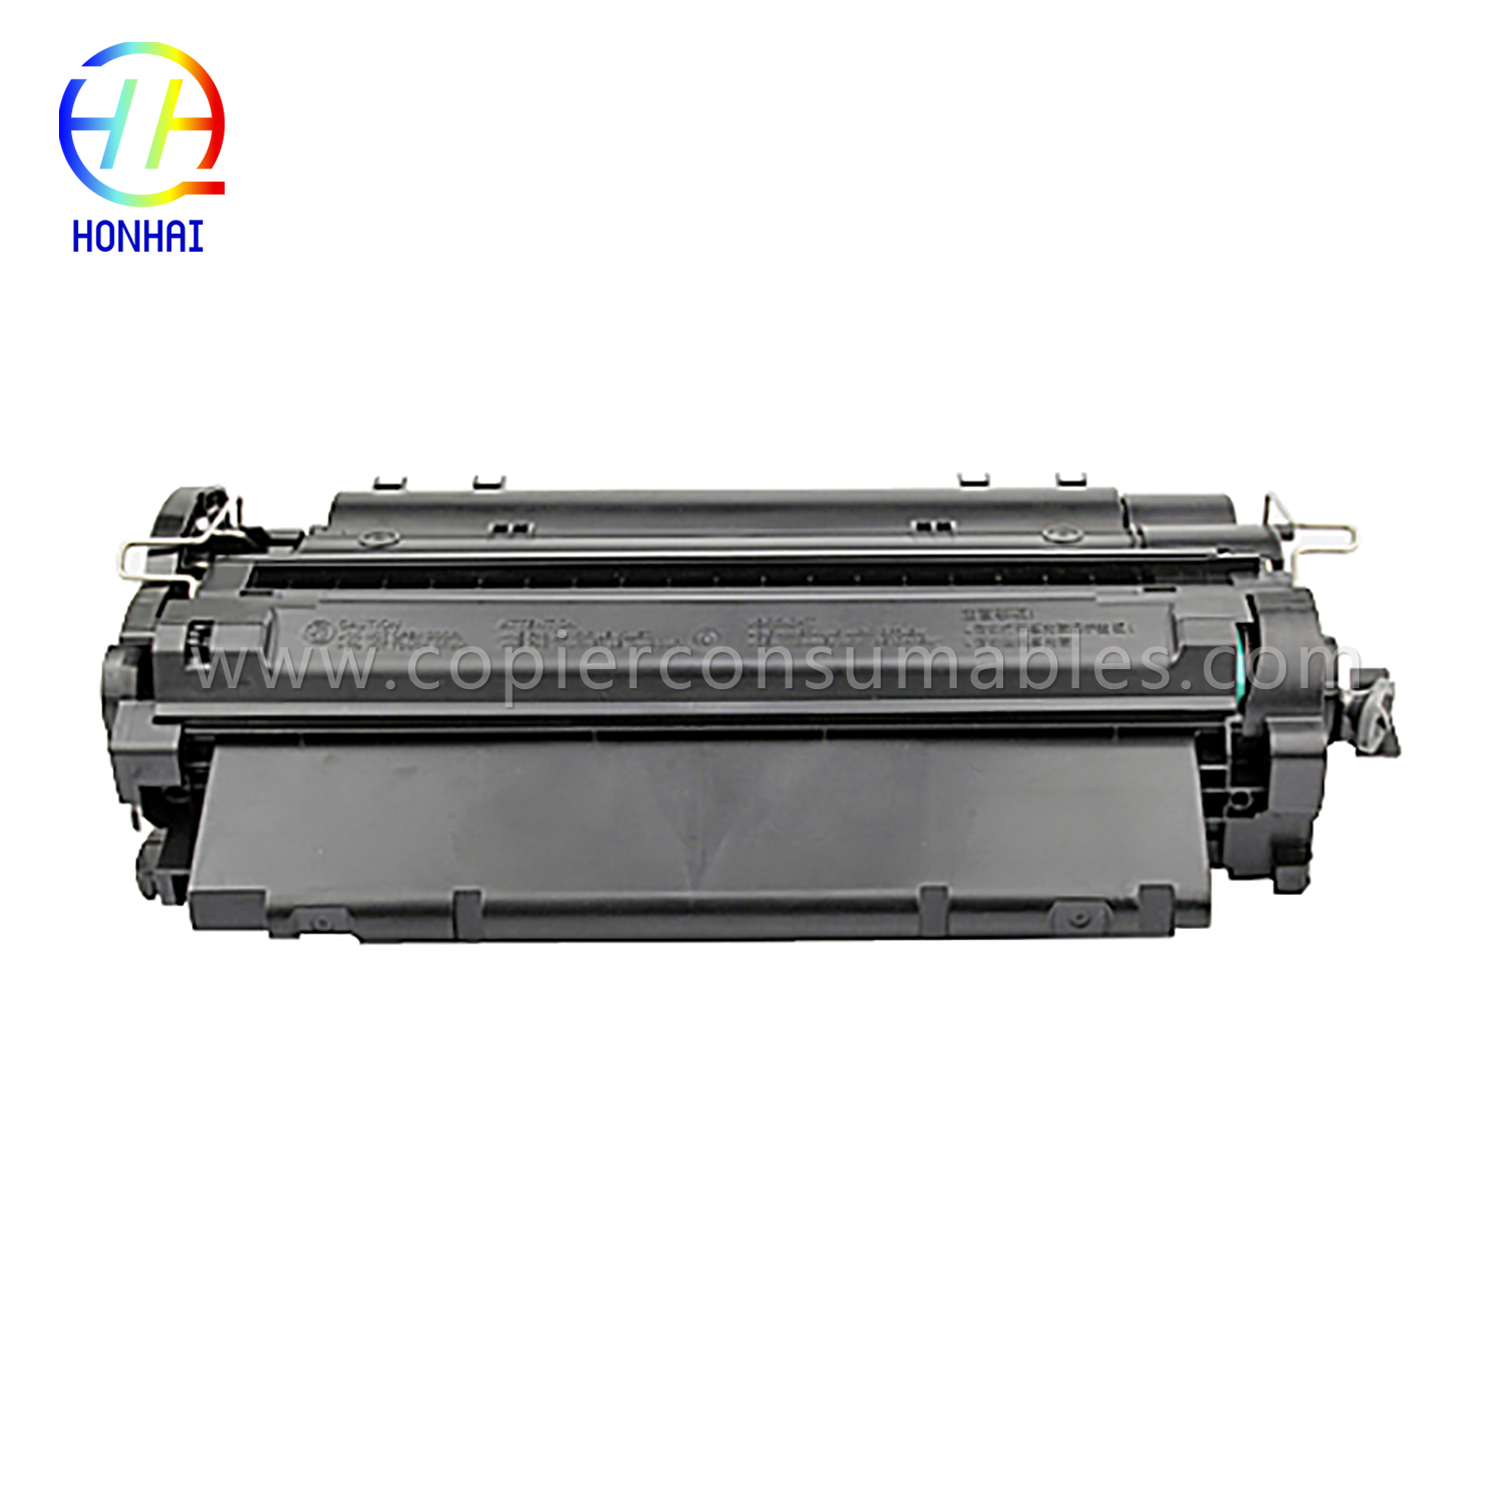 Colour Toner Cartridges HP LaserJet LaserJet Pro MFP M521dn Enterprise P3015 (CE255X) -1 (2) 拷贝